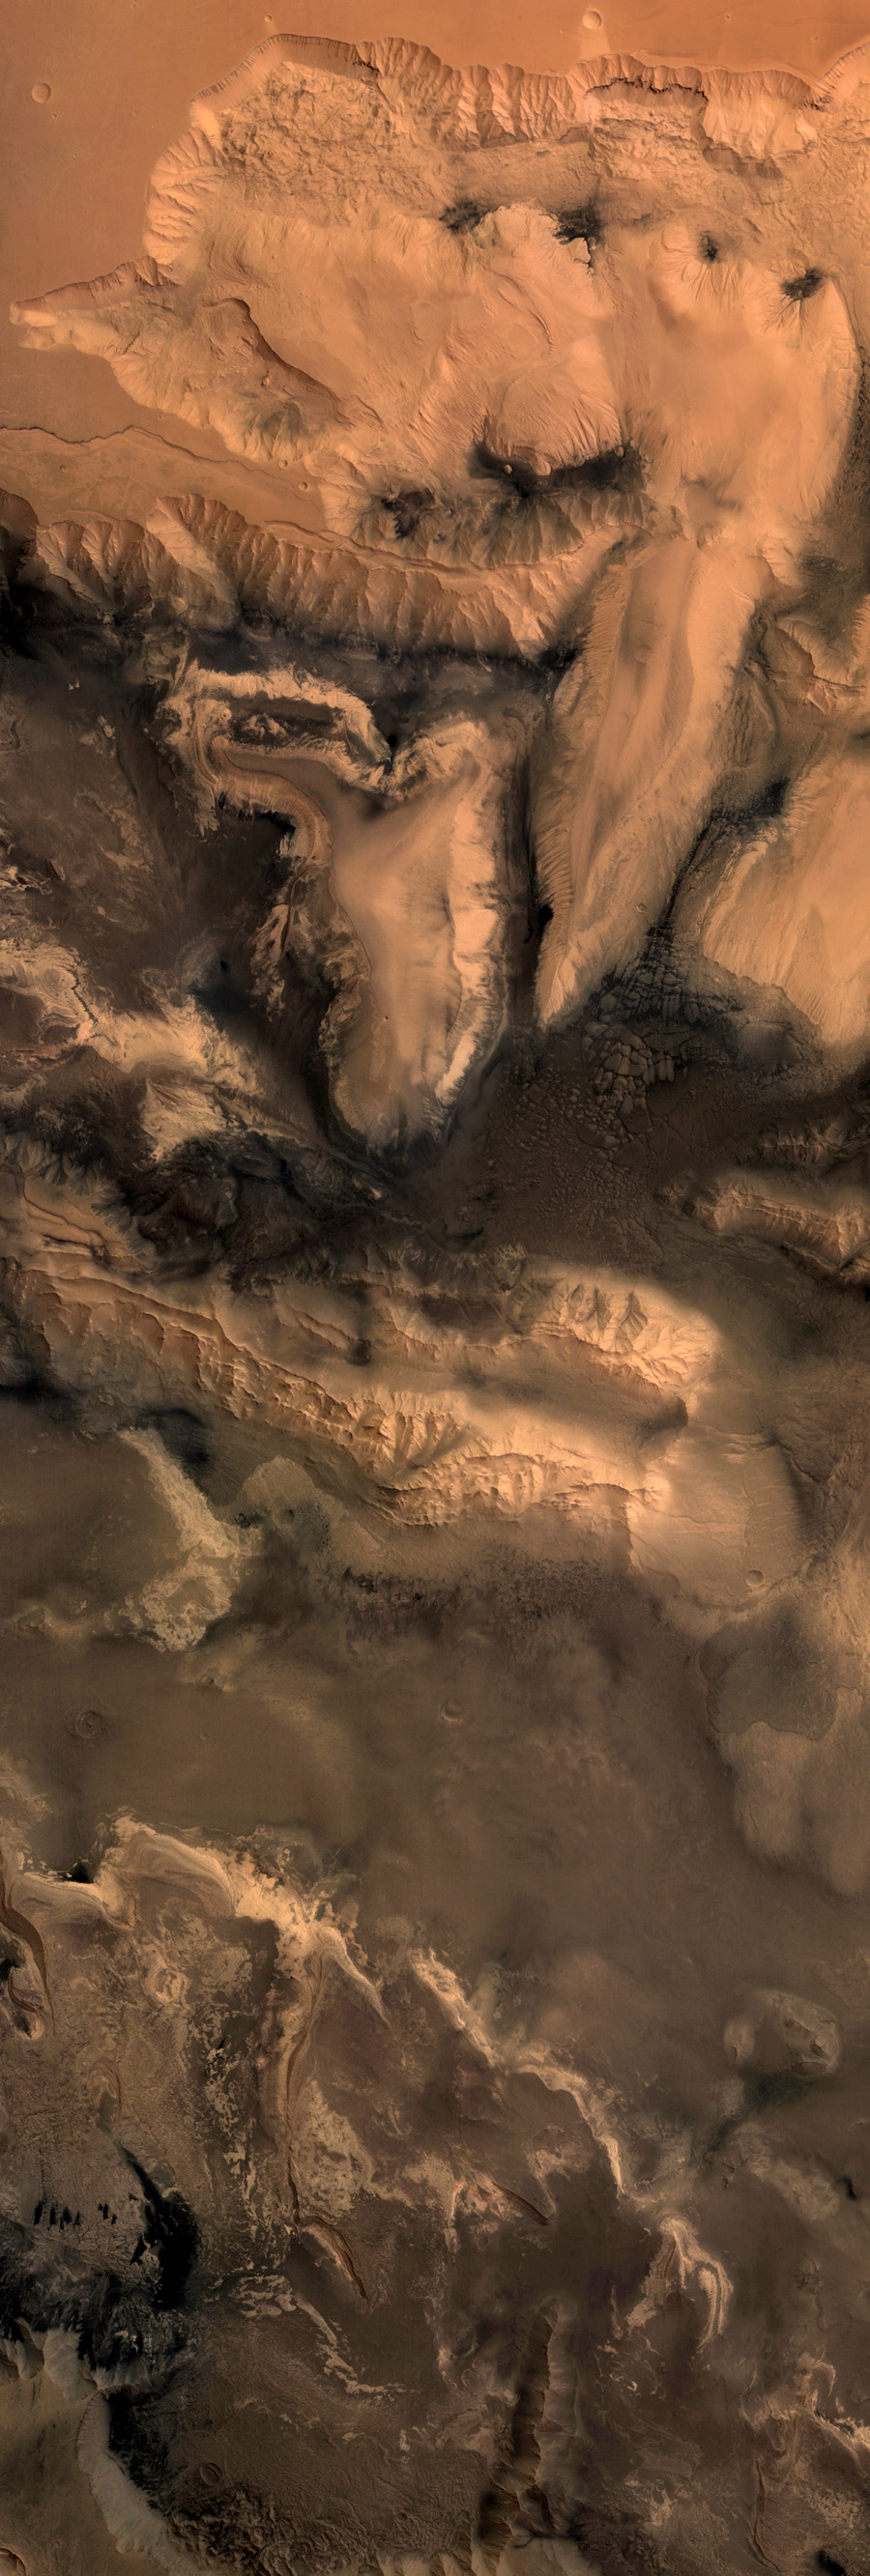 фрагмент снимка долины Маринера Марса космическим аппаратом Mars Express Европейского космического агенства